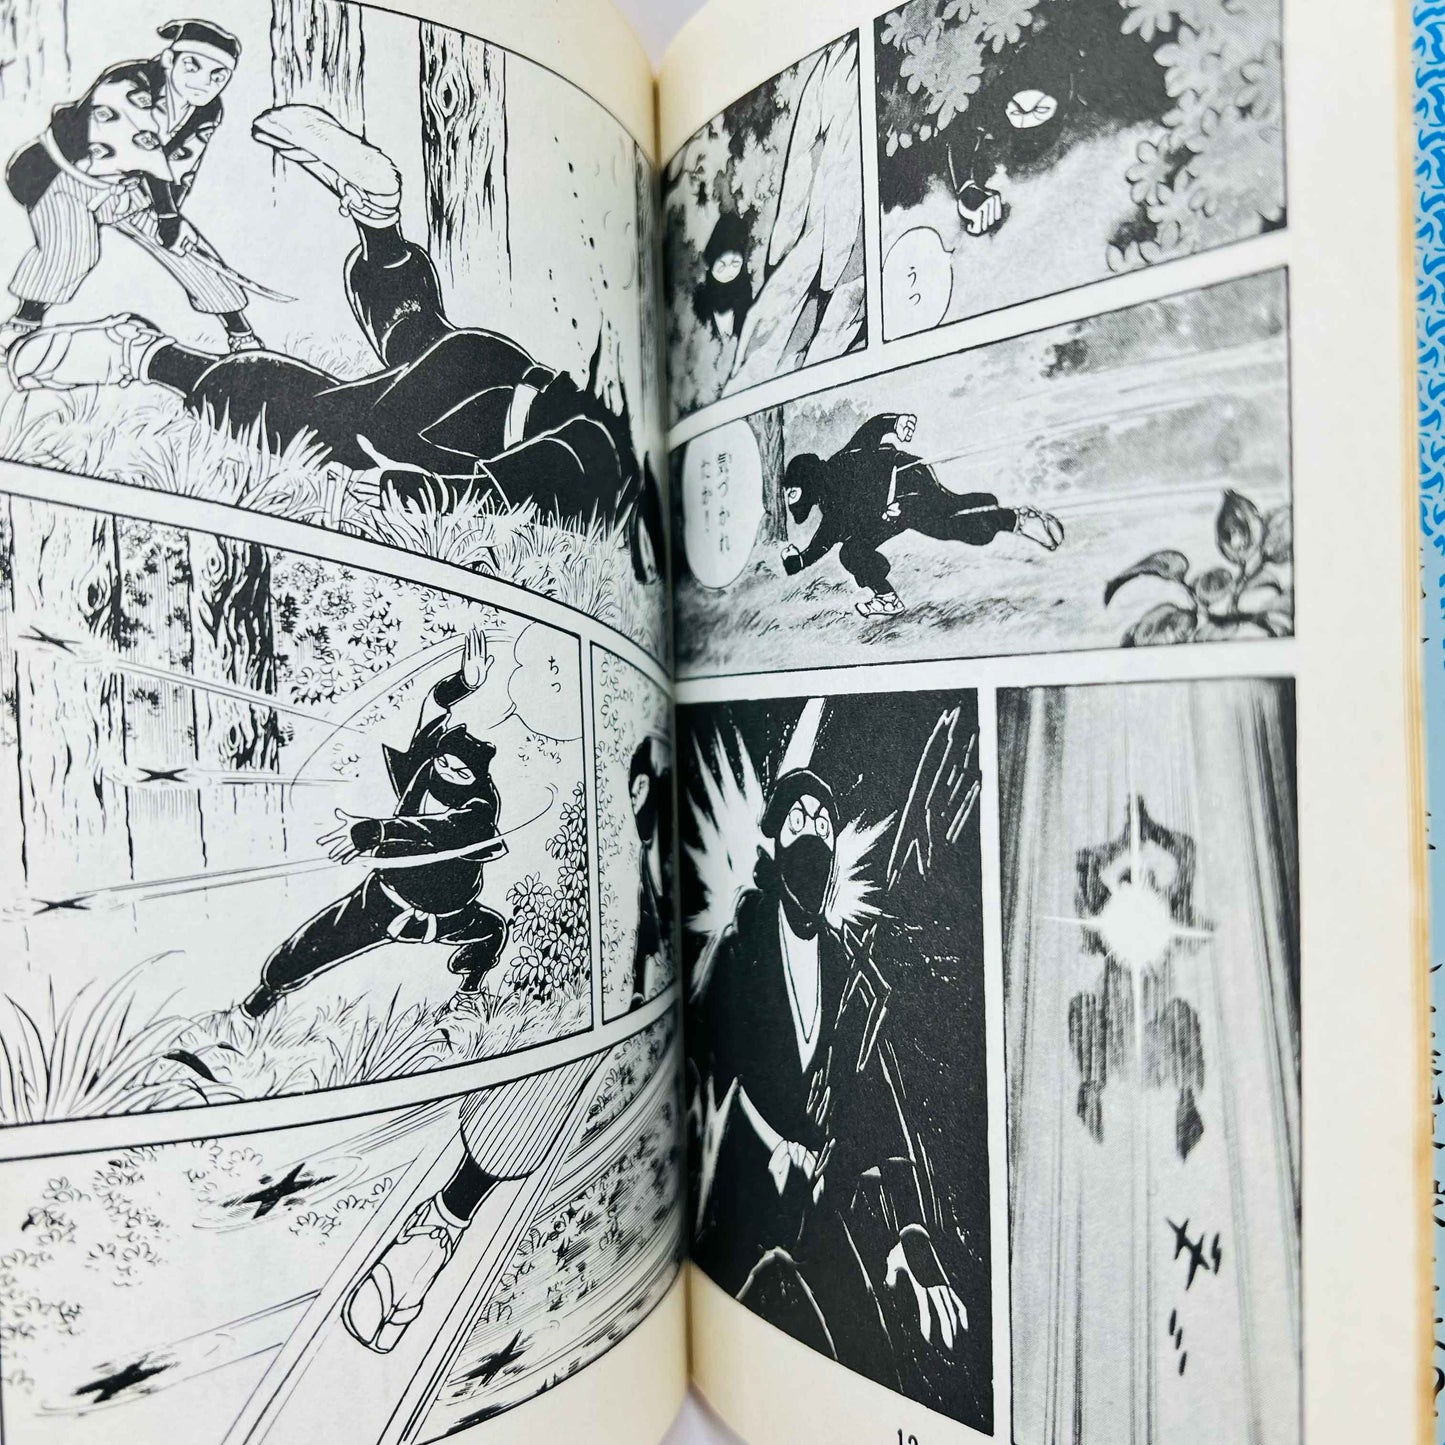 Makaishuu (Power Comics) - Volume 01 - 1stPrint.net - 1st First Print Edition Manga Store - M-MAKAISHUPC-01-001